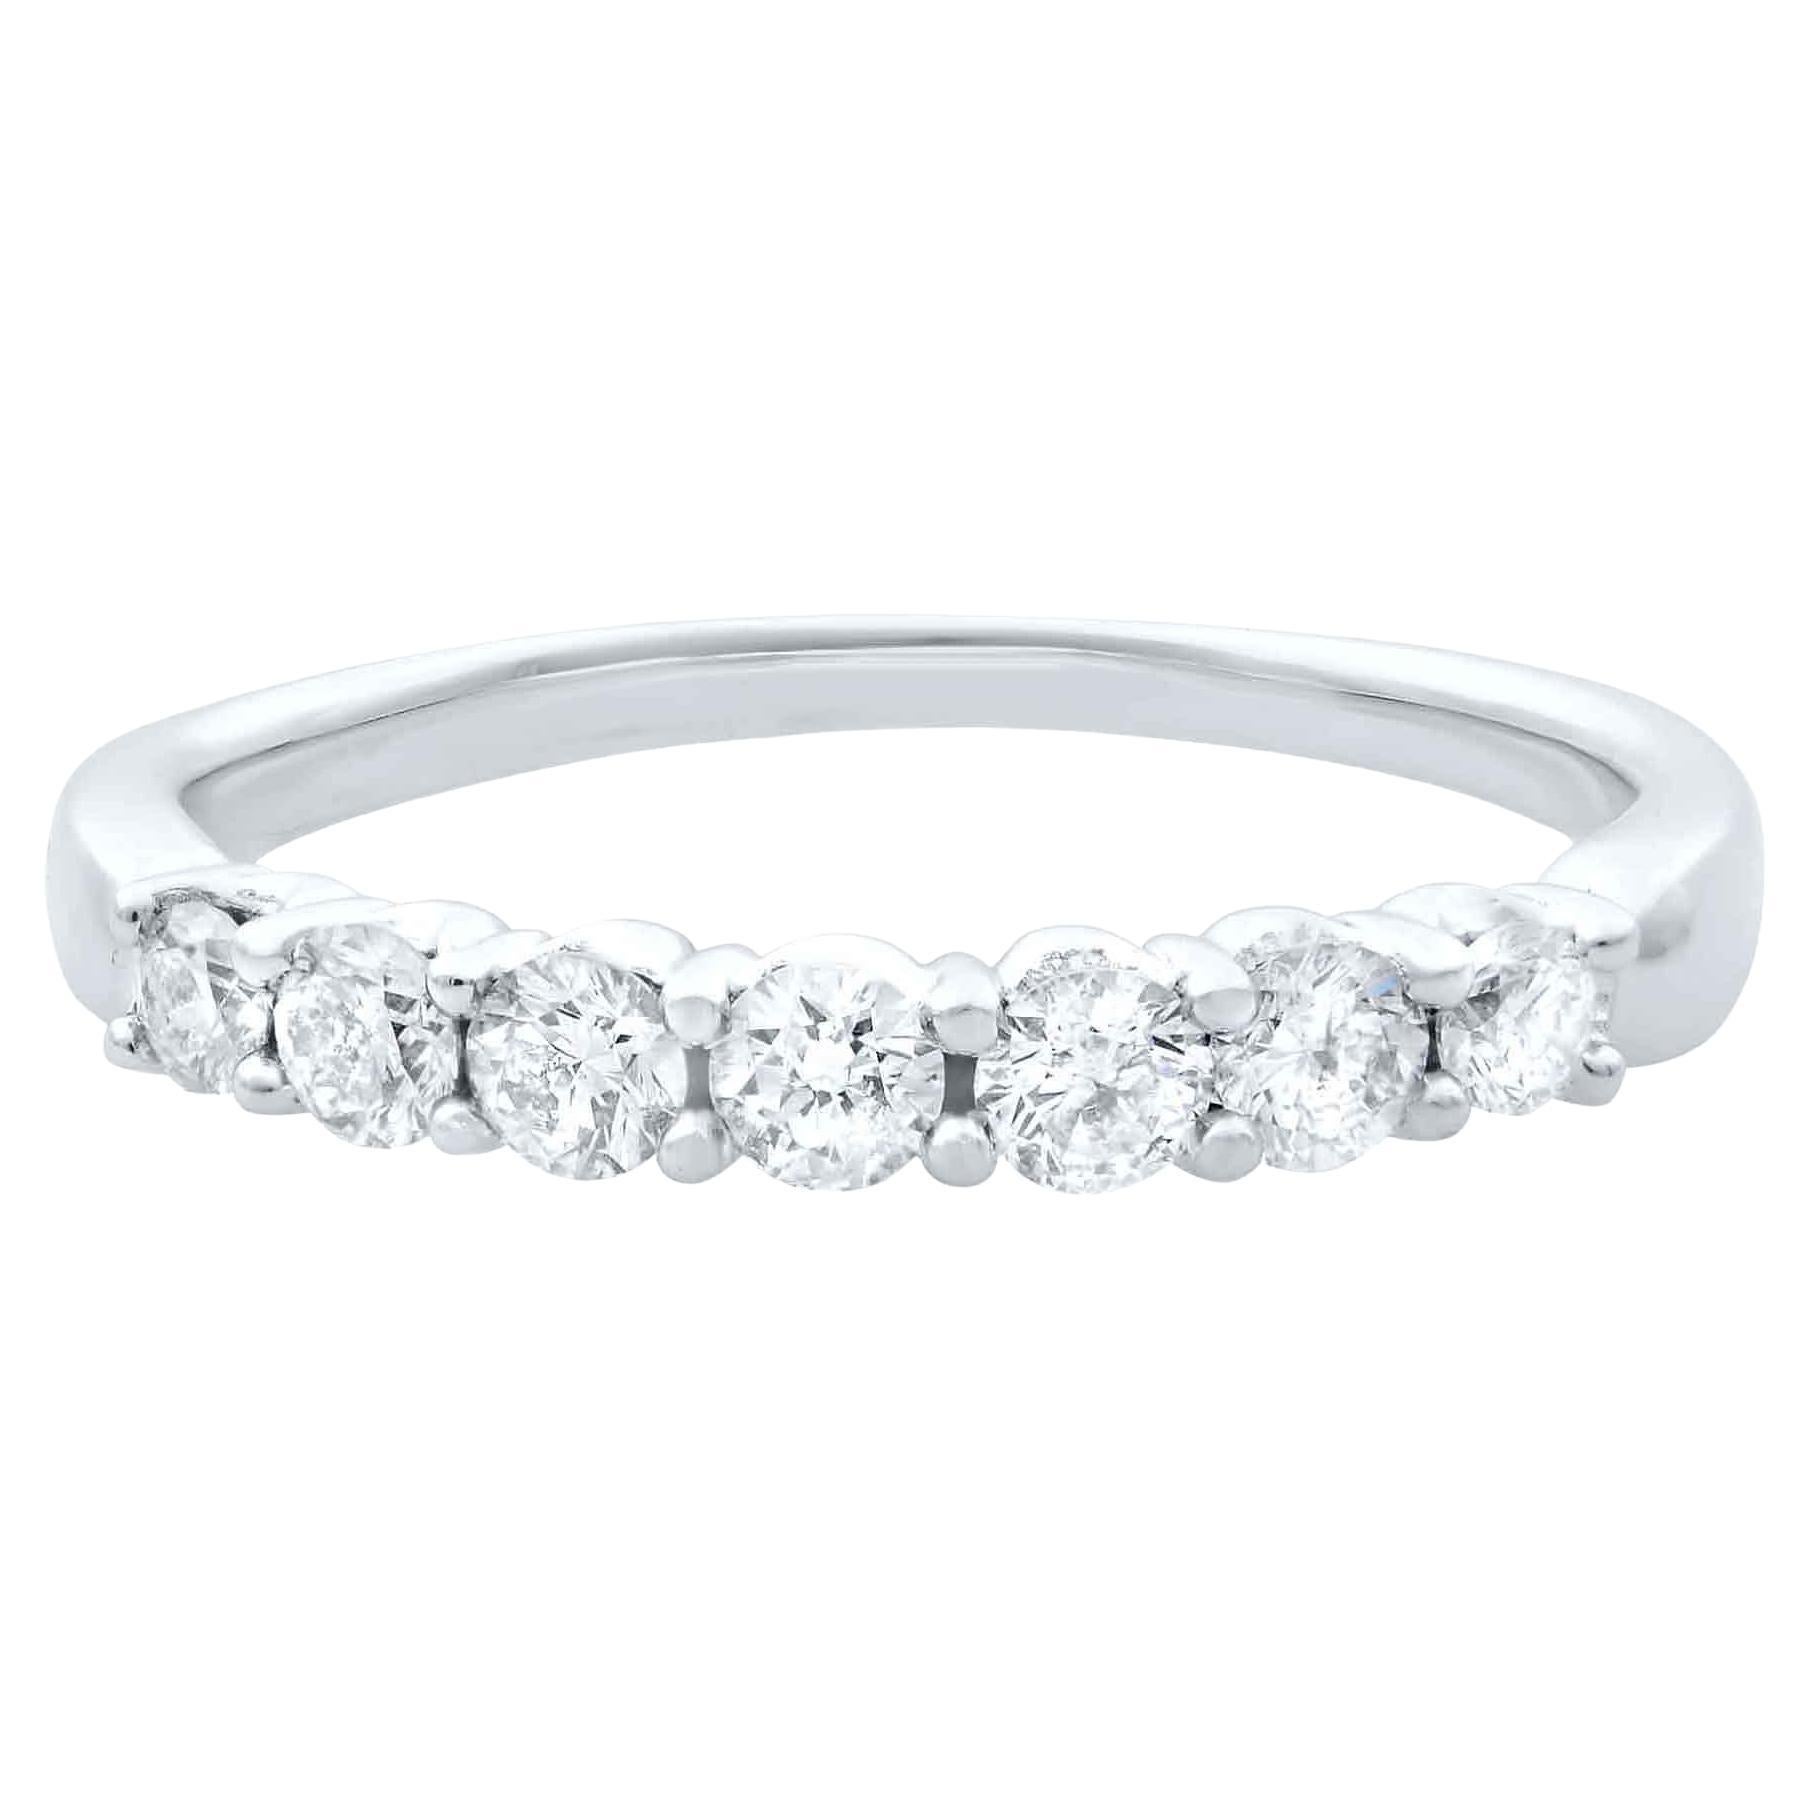 Rachel Koen Diamond Wedding Band Ring 14K White Gold 0.42cttw For Sale